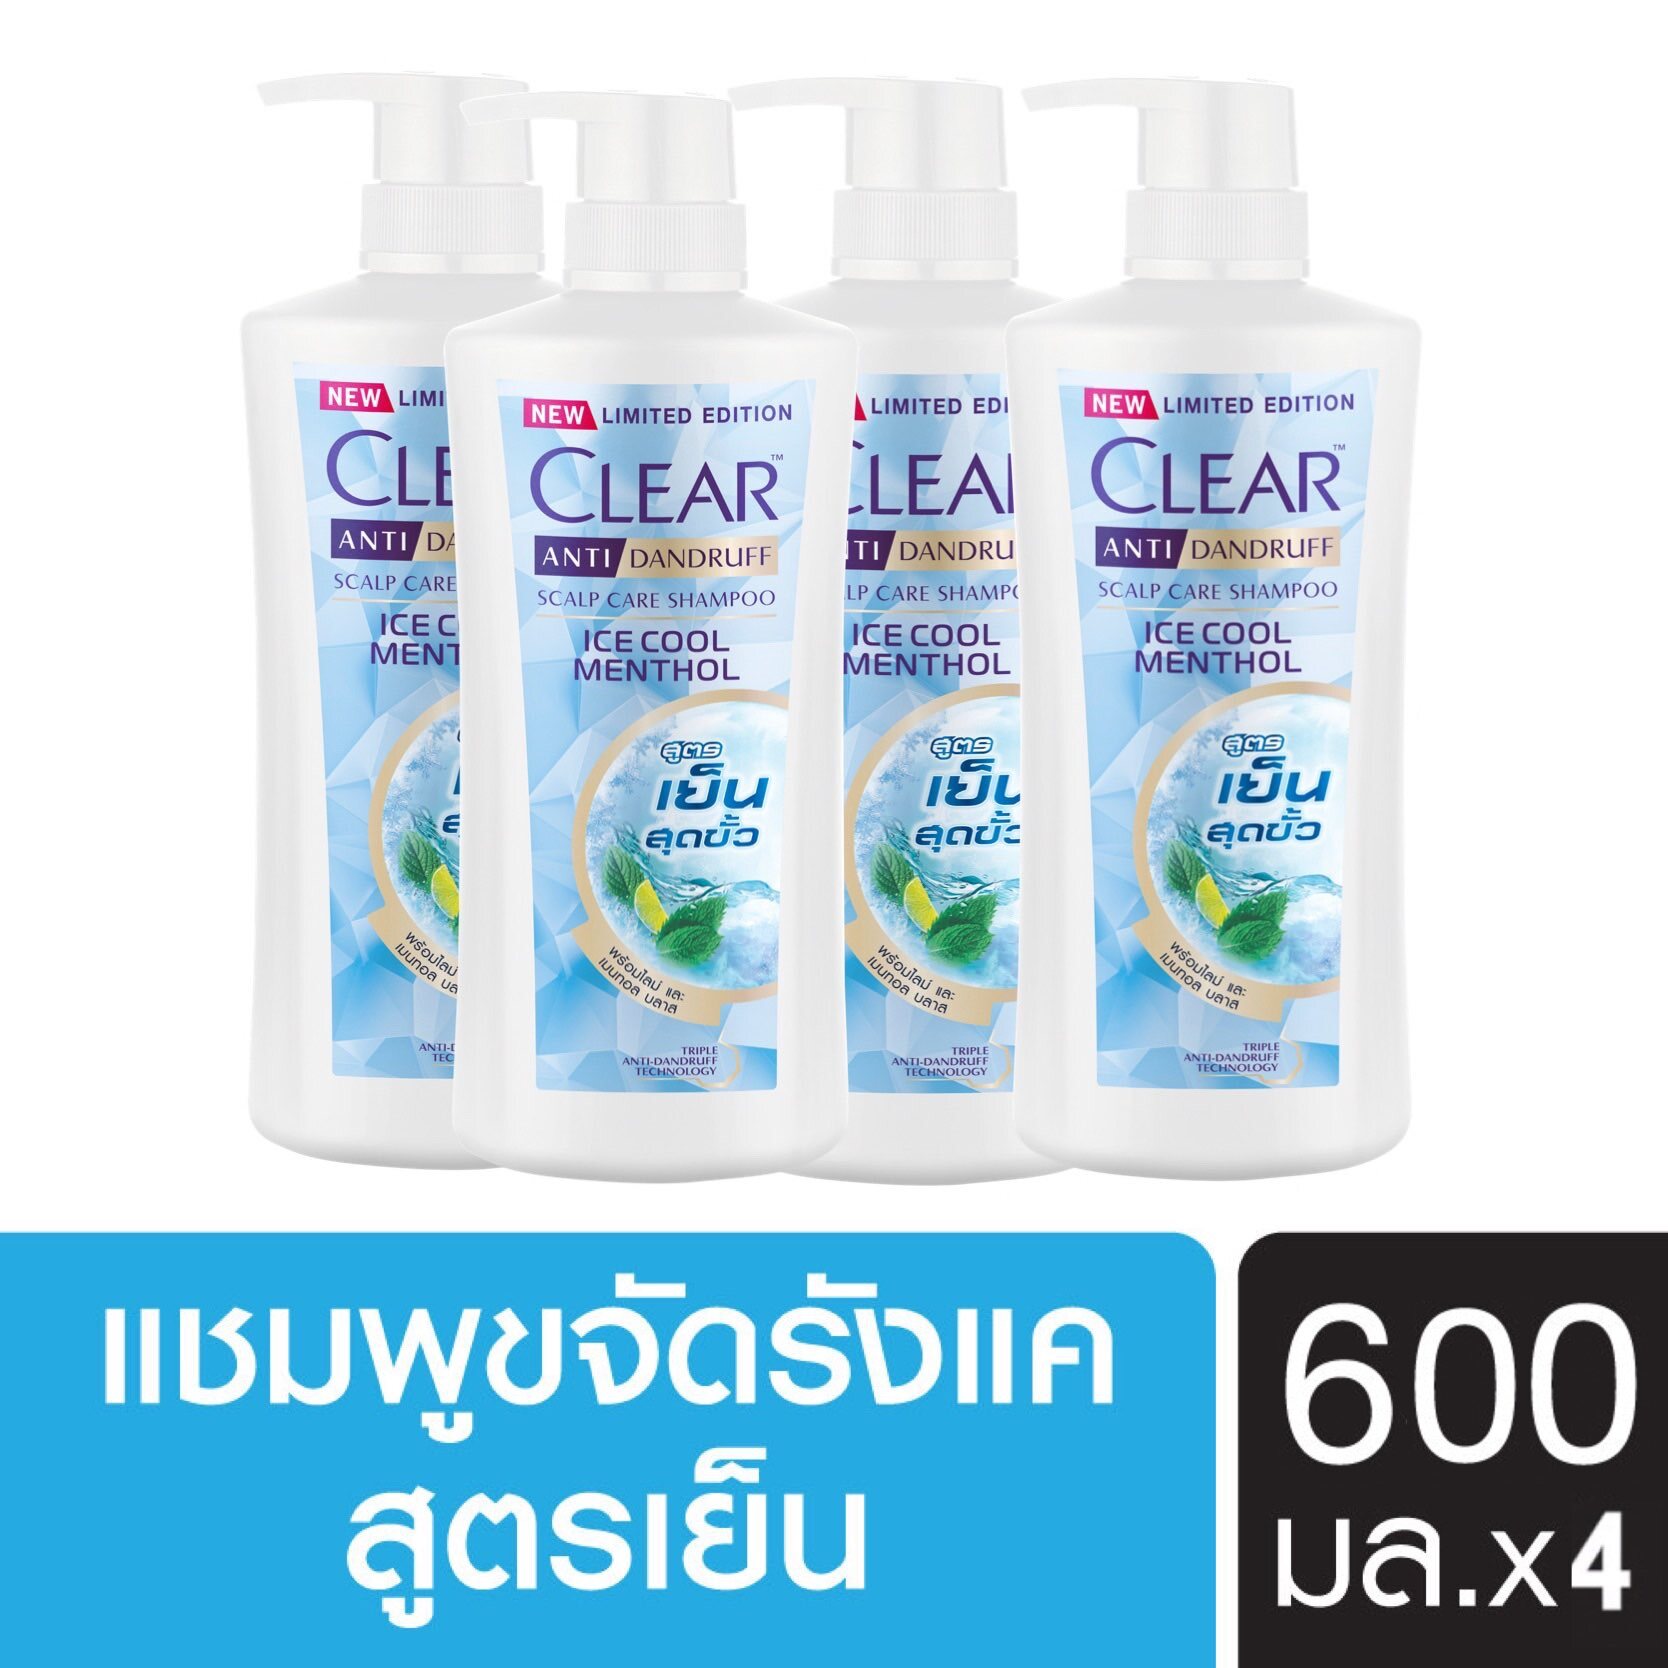 โปรโมชั่น [ส่งฟรี] เคลียร์ แชมพูขจัดรังแค ไอซ์ คูล เมนทอล สูตรเย็น สดชื่น สีฟ้า 600 มล. x4 Clear Anti Dandruff Shampoo Ice Cool Menthol Light Blue 600 ml. x4